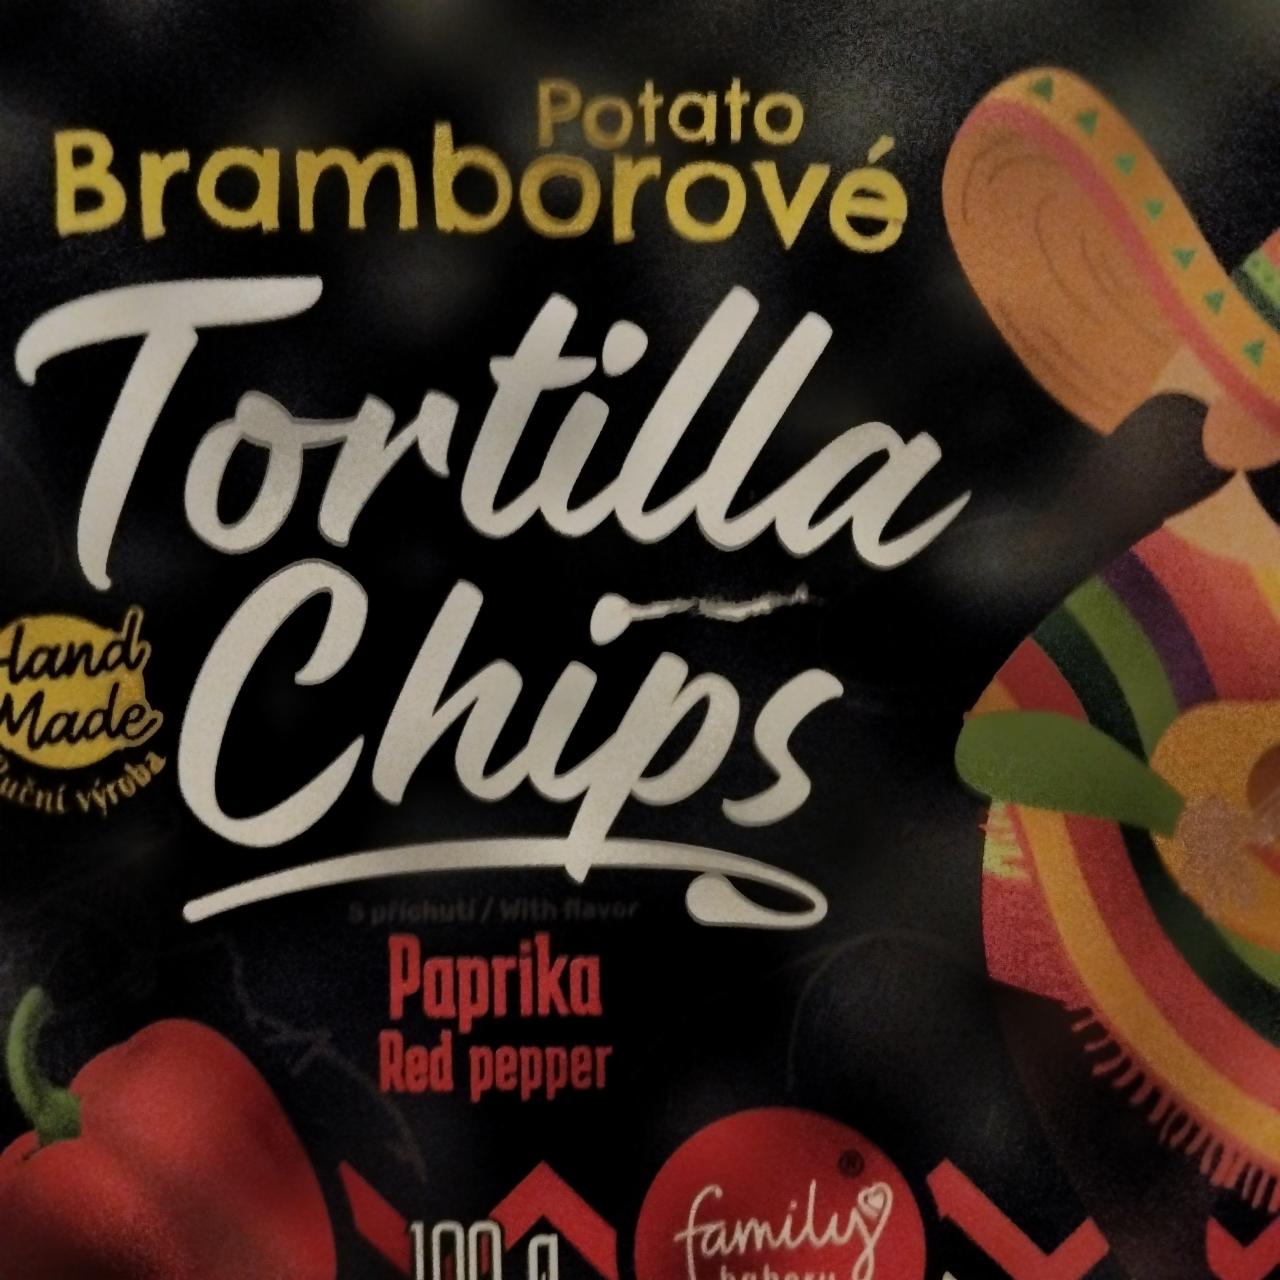 Fotografie - Potato Bramborové tortilla chips Paprika Red peper Family Bakery Cafe